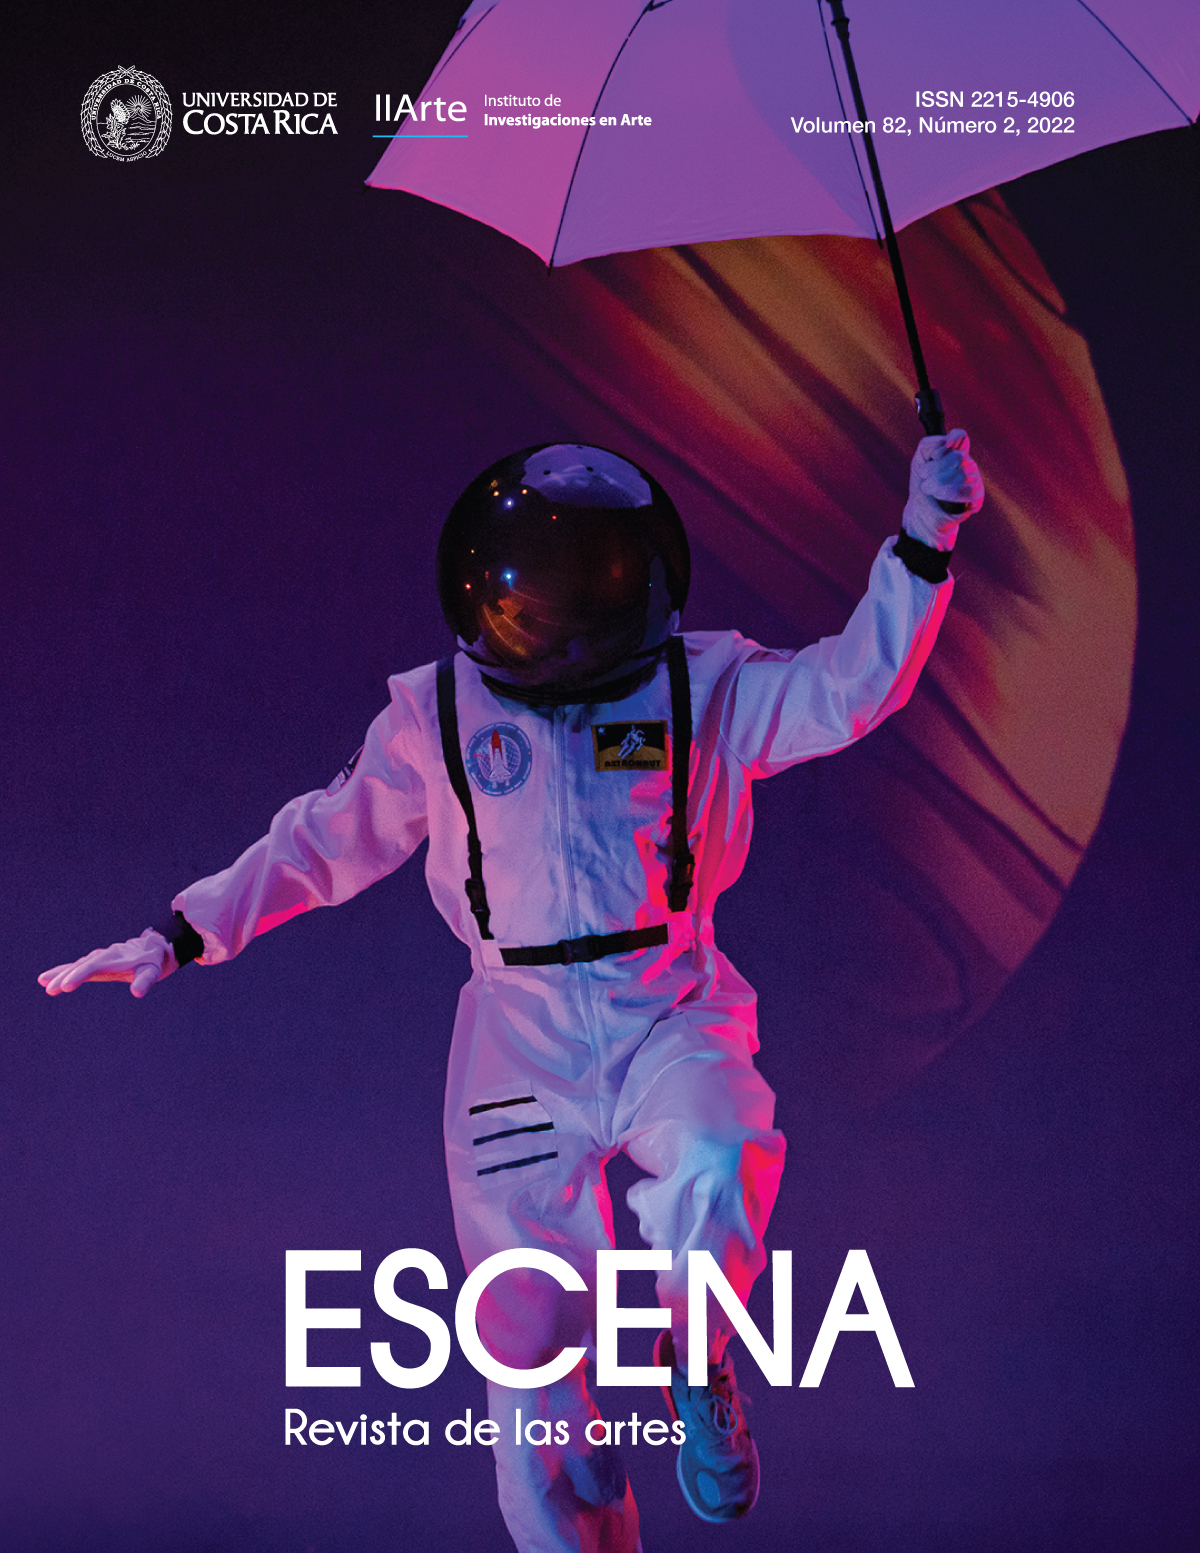 Un astronauta sosteniendo un paraguas abierto